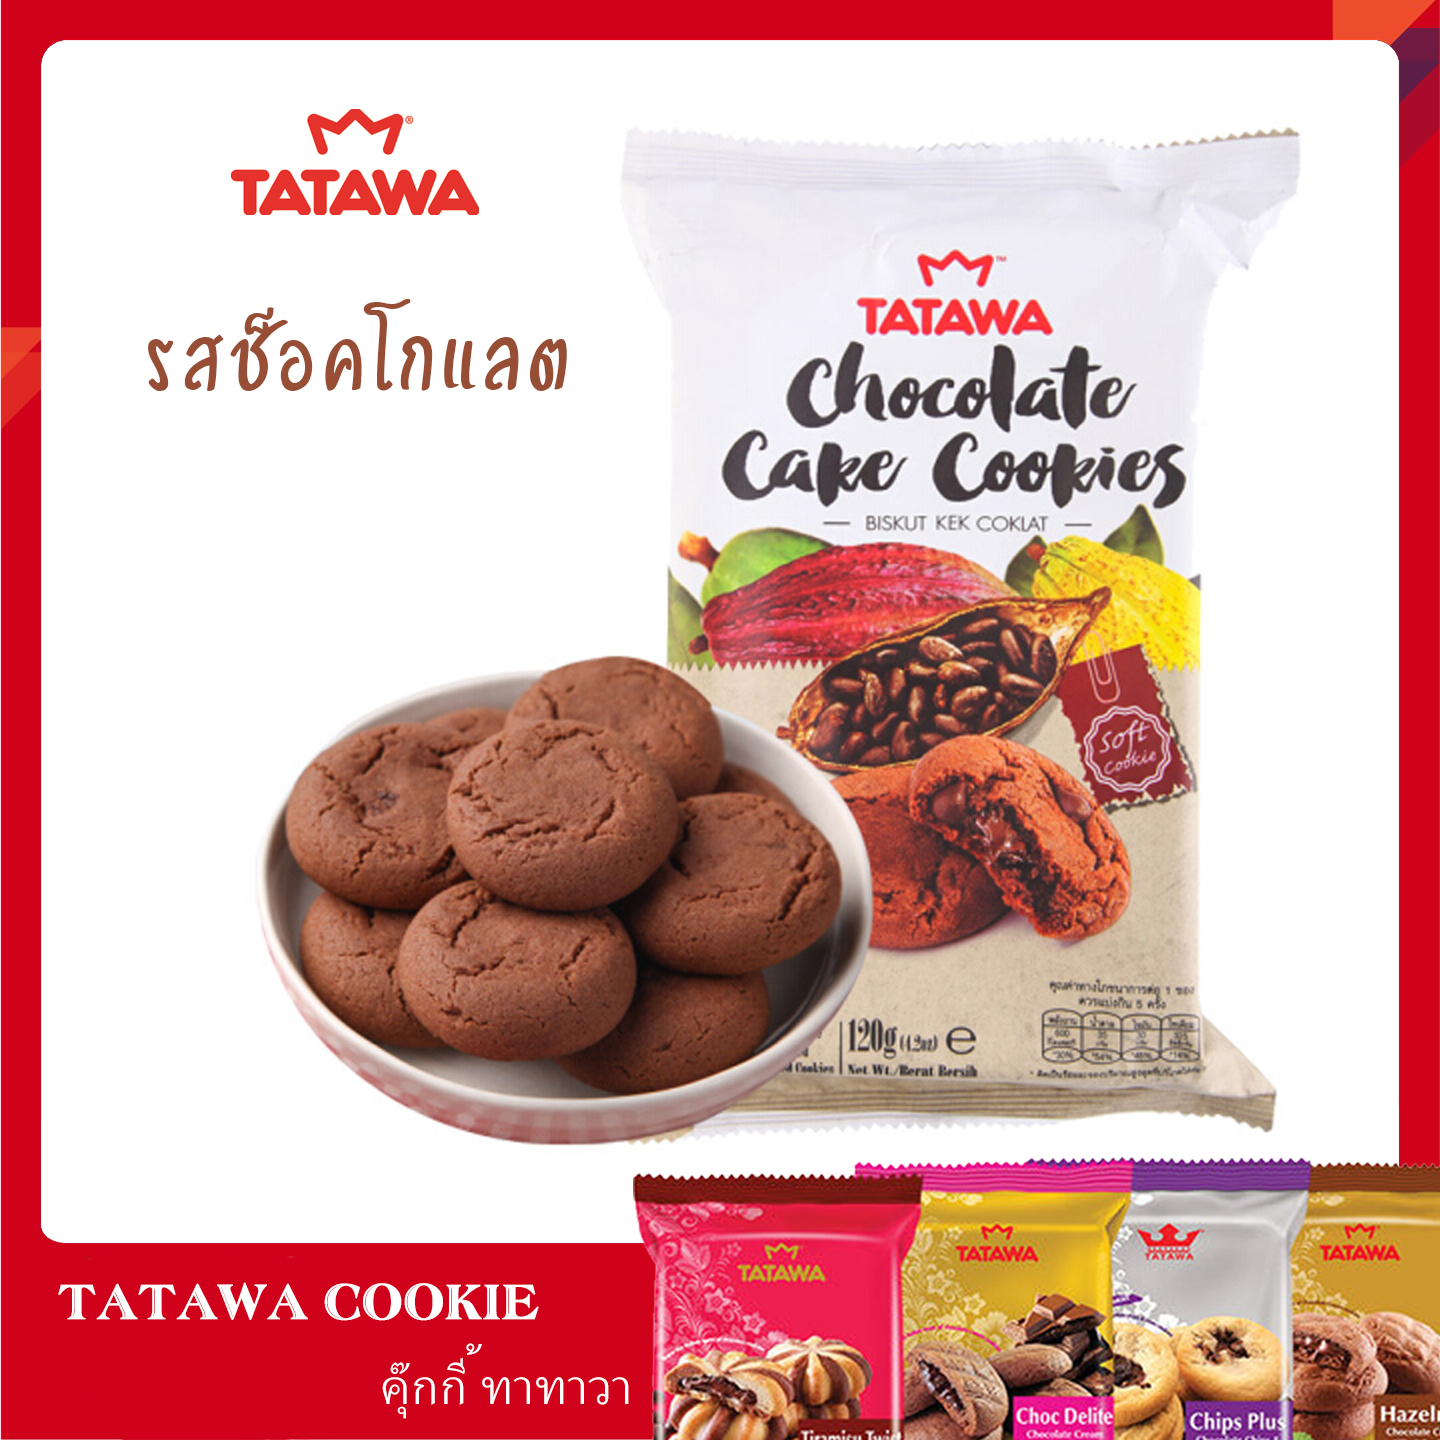 (รส Chocolate Cake)  คุกกี้ TATAWA คุกกี้นิ่มสอดไส้หลายรส หอม อร่อย บรรจุ 10 ชิ้น ขนาด 120 กรัม